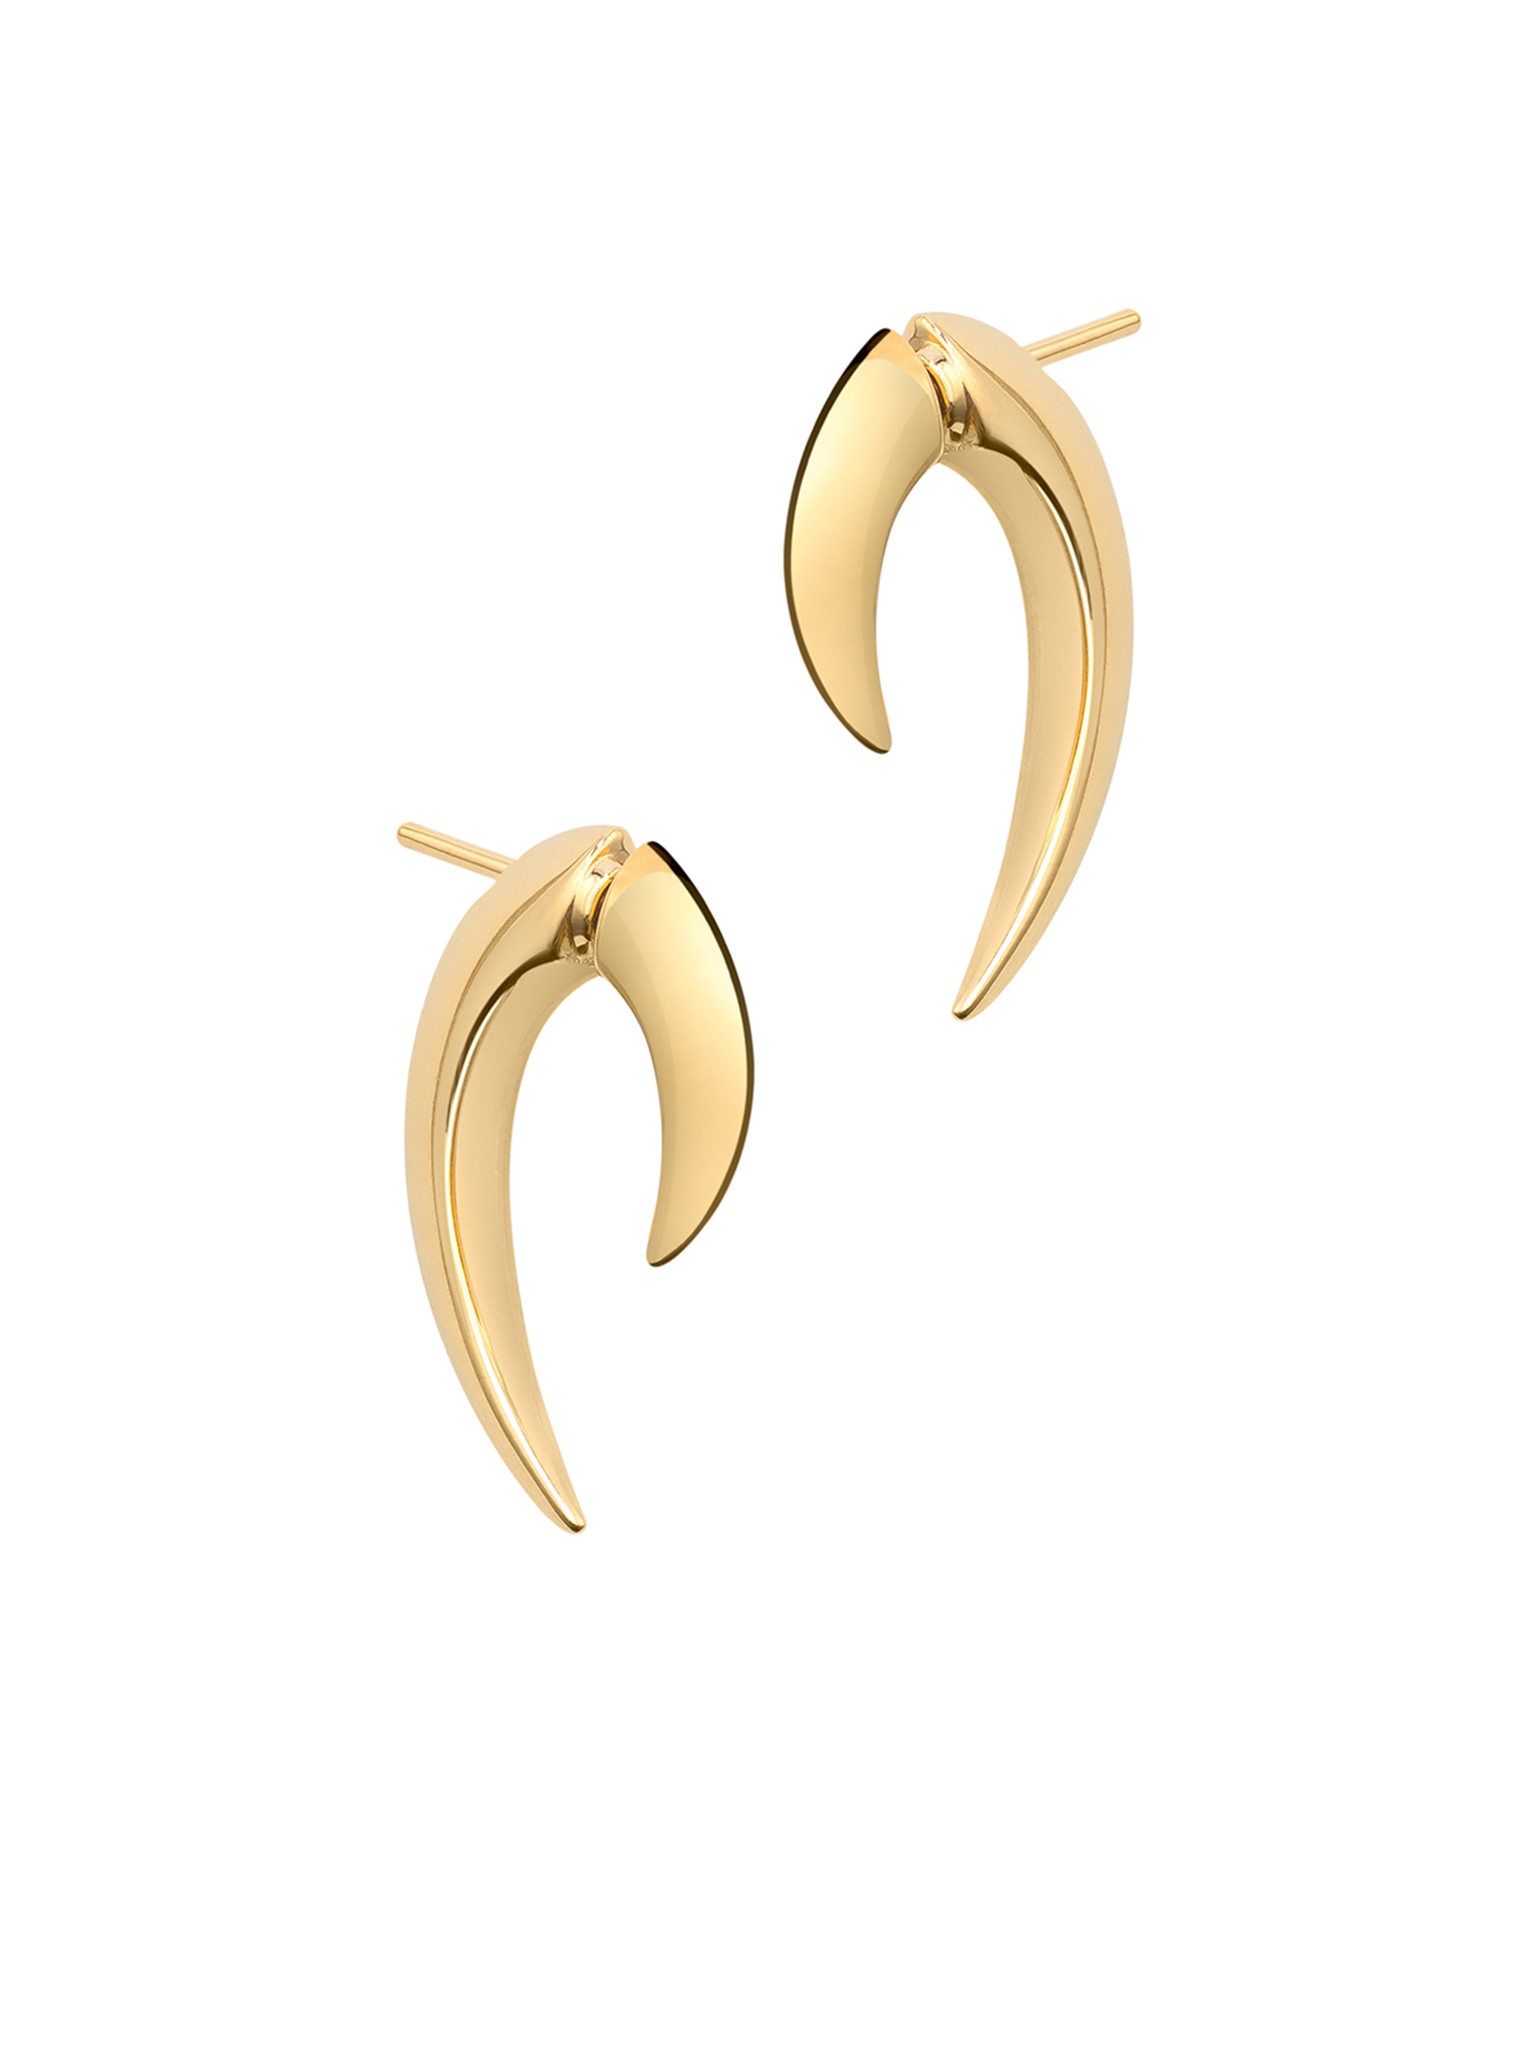 Talon earrings - yellow gold vermeil